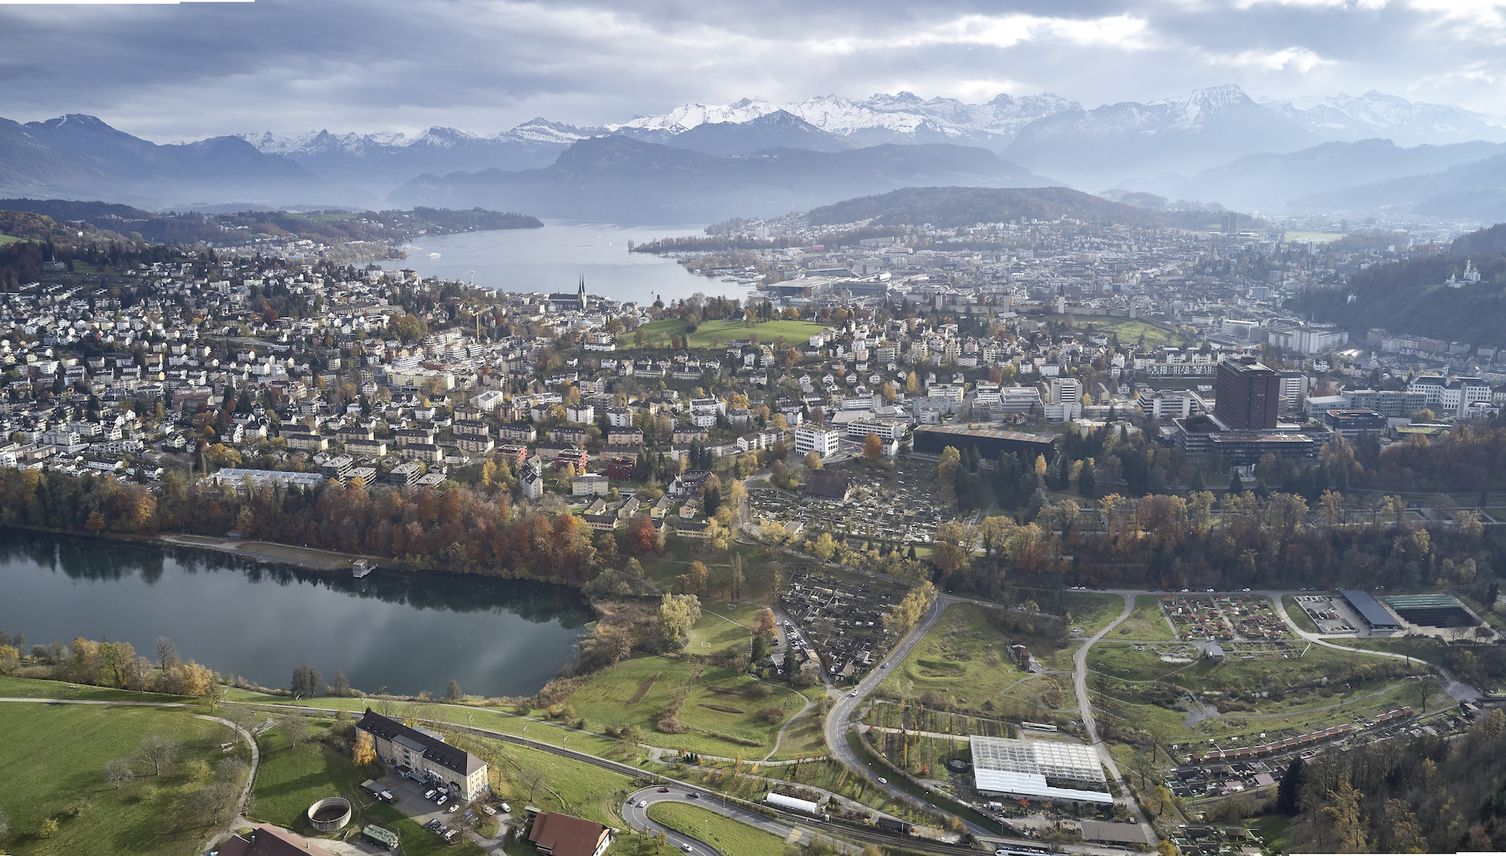 Lebensqualität Luzern: Wie geht es der Bevölkerung?